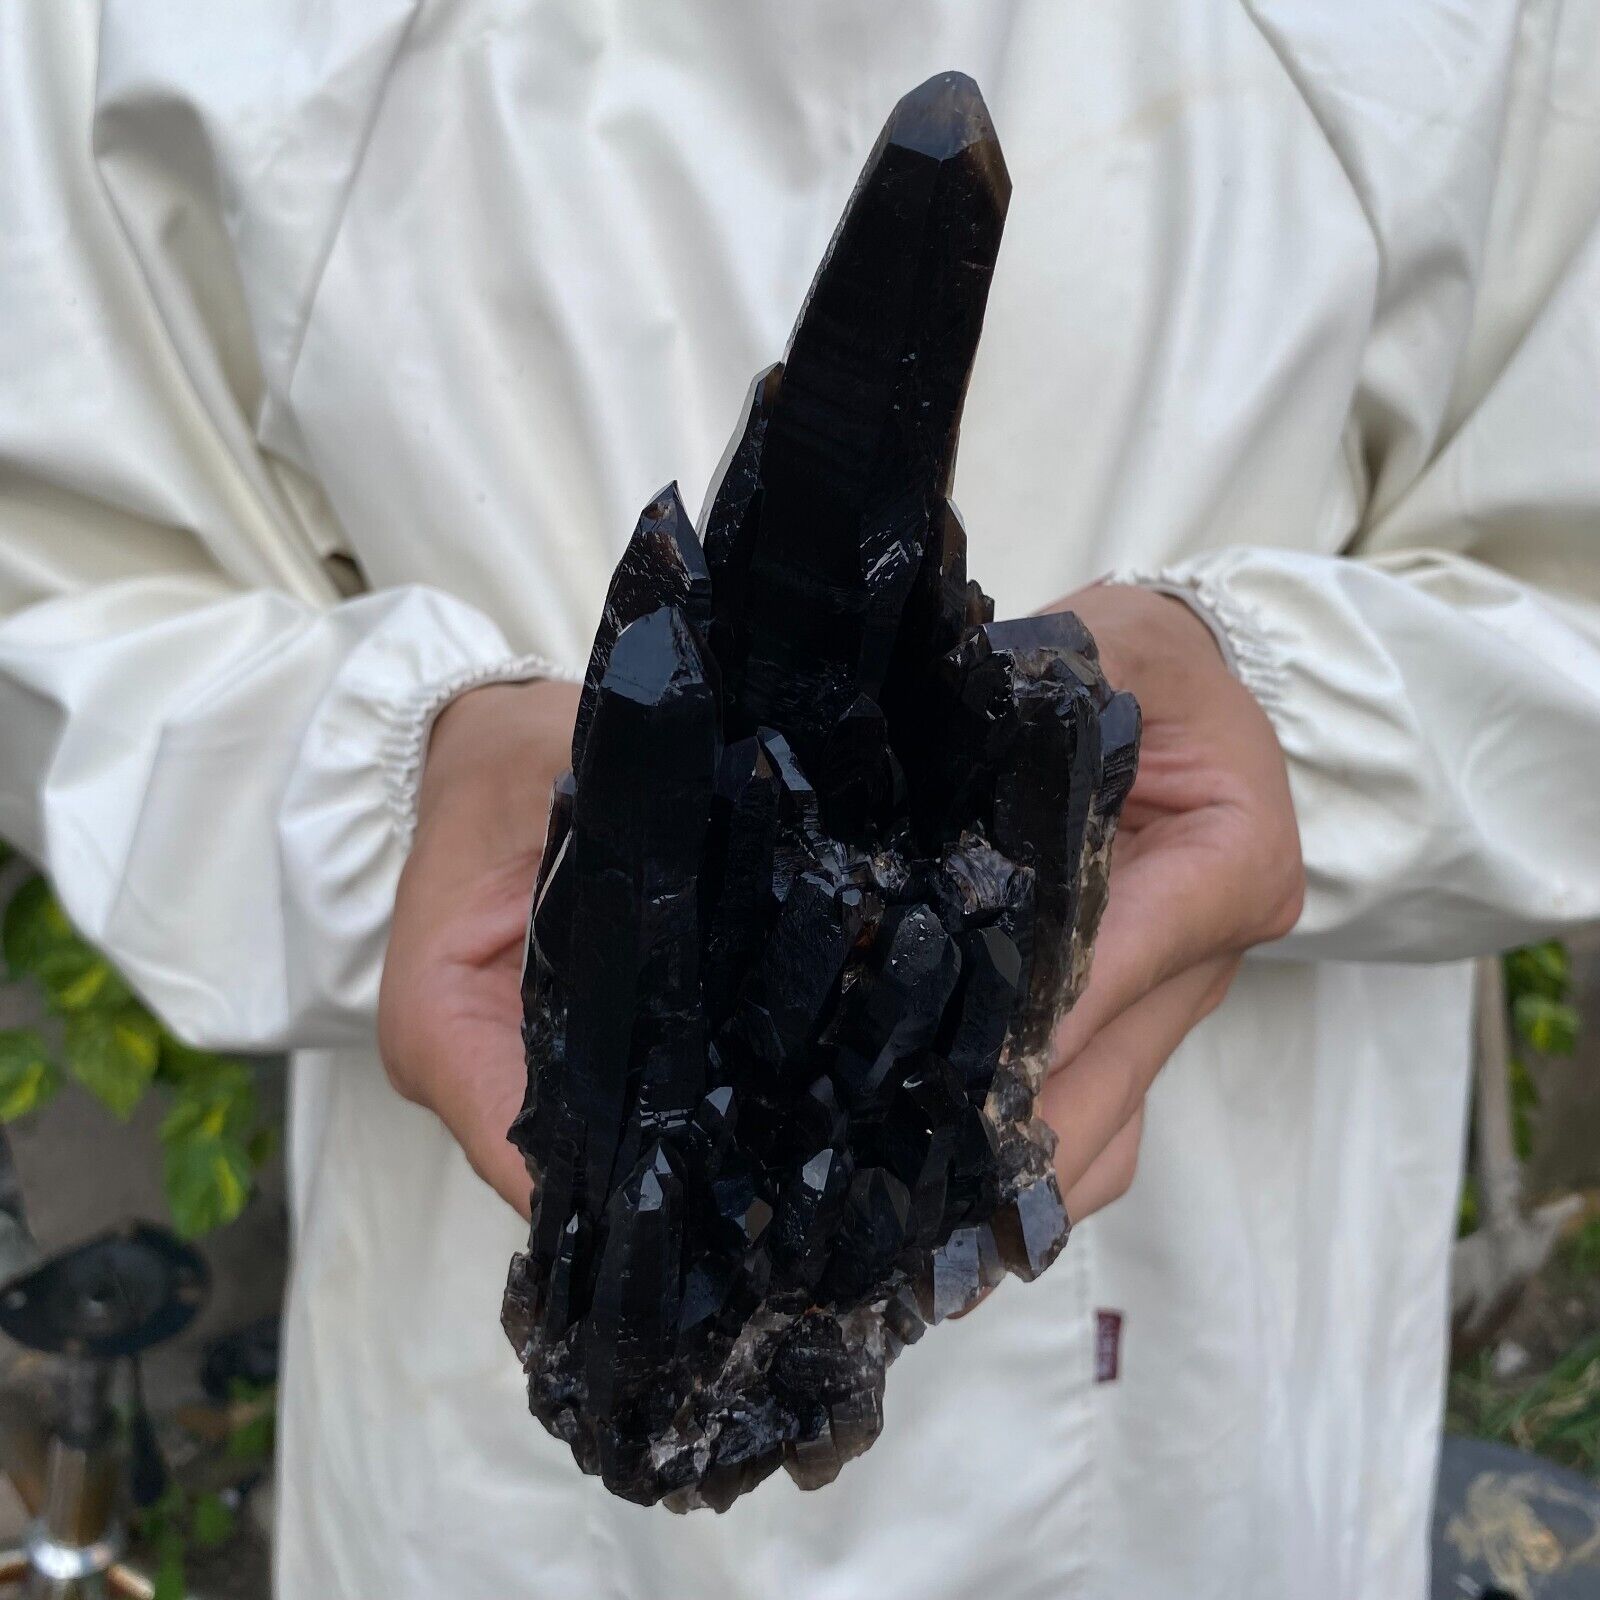 1.6lb Natural Beautiful Black Quartz Crystal Cluster Mineral Specimen Rare